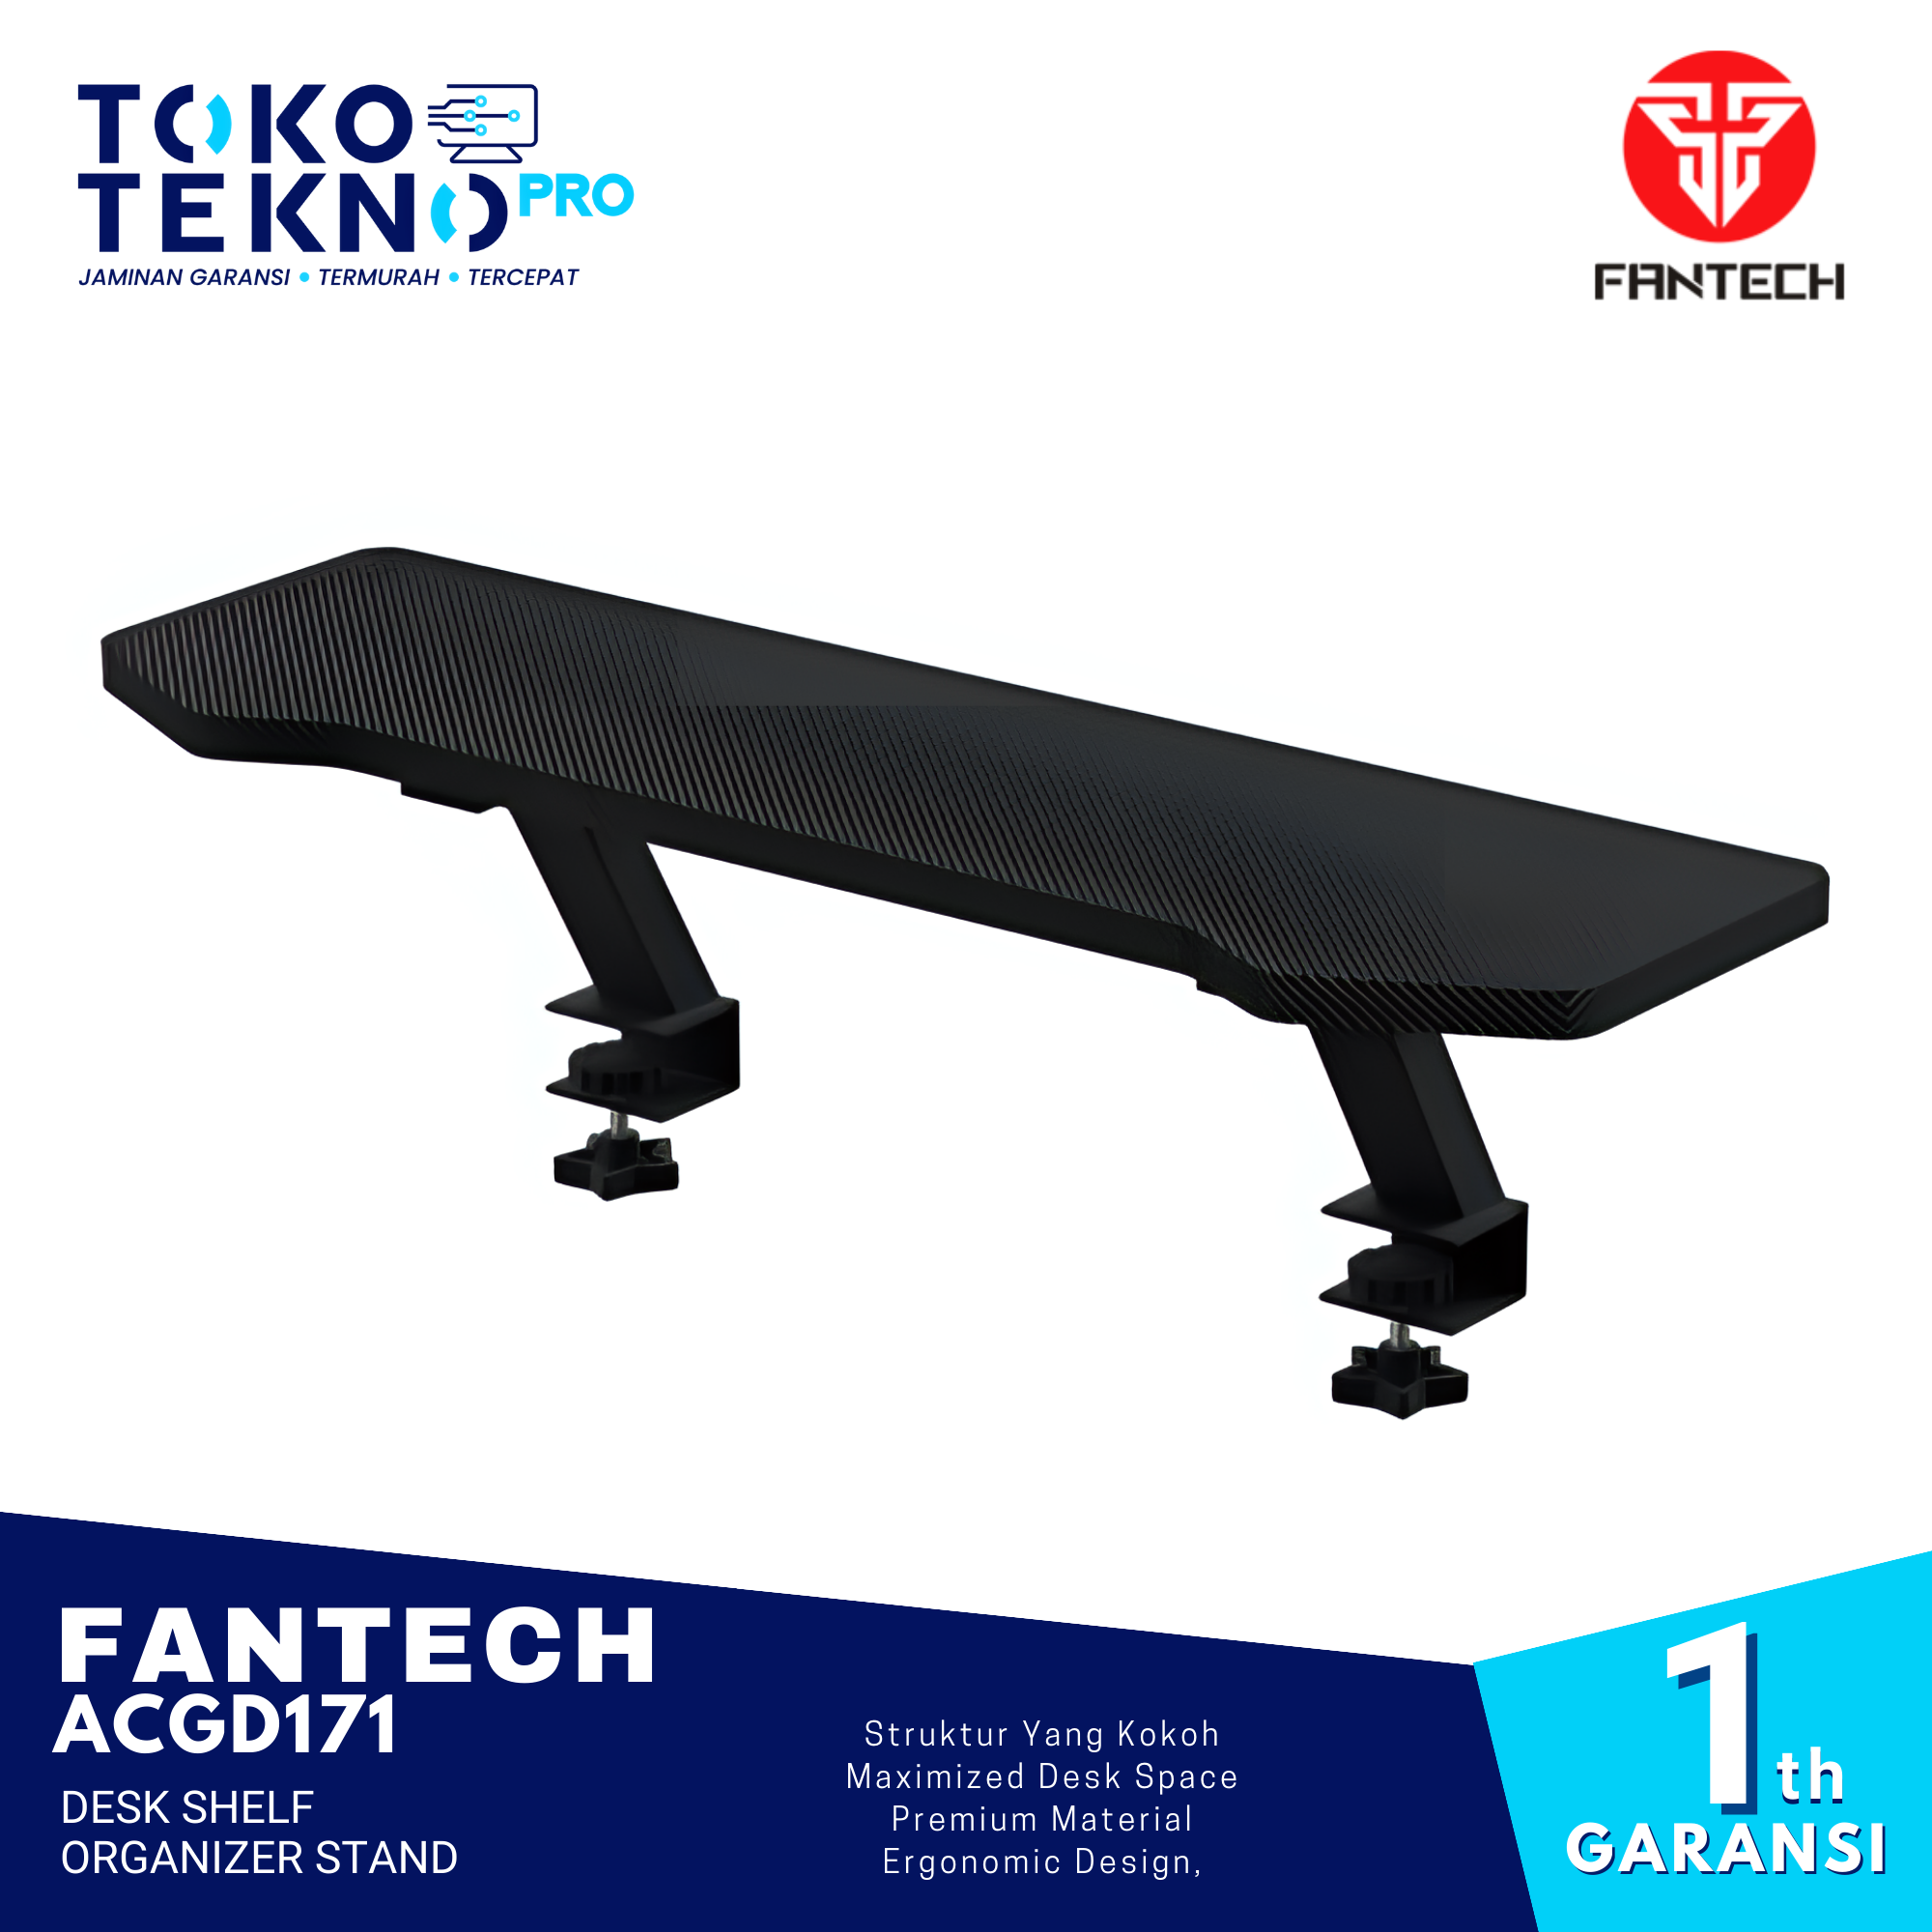 Fantech ACGD171 Desk Shelf Organizer Stand